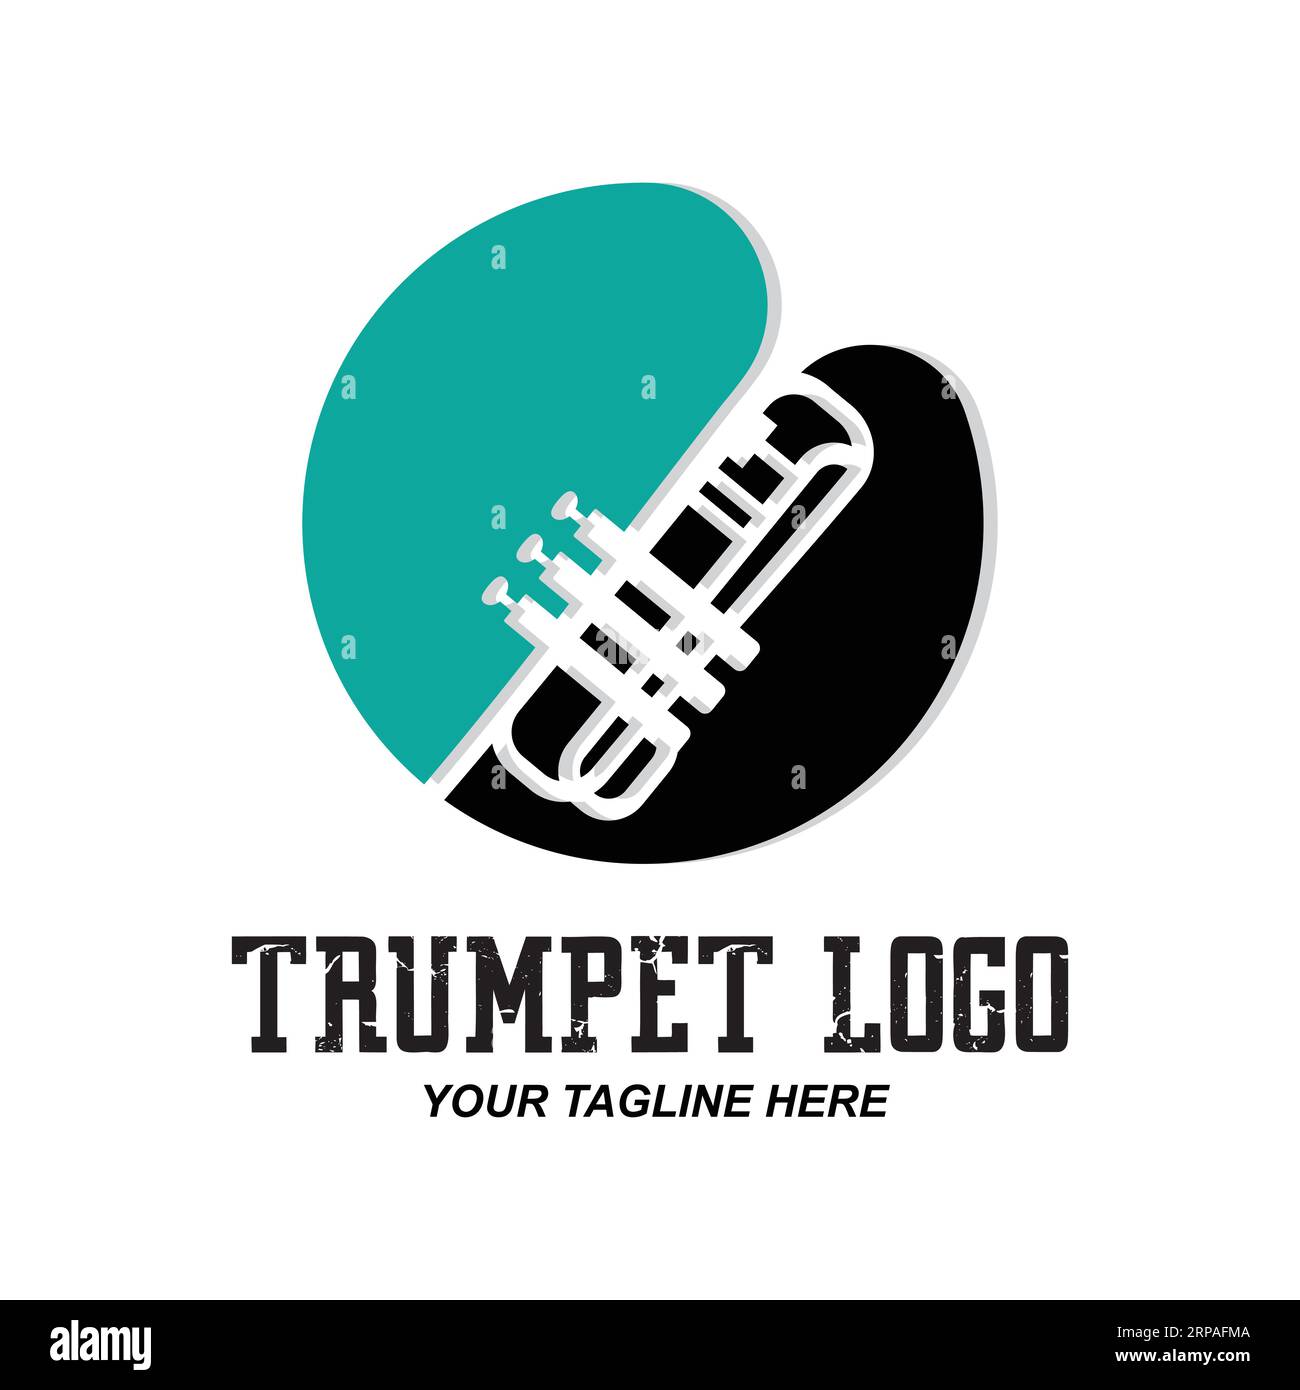 Disegno del logo della tromba, generazione di melodia, illustrazione dello schizzo vettoriale dello strumento musicale Illustrazione Vettoriale